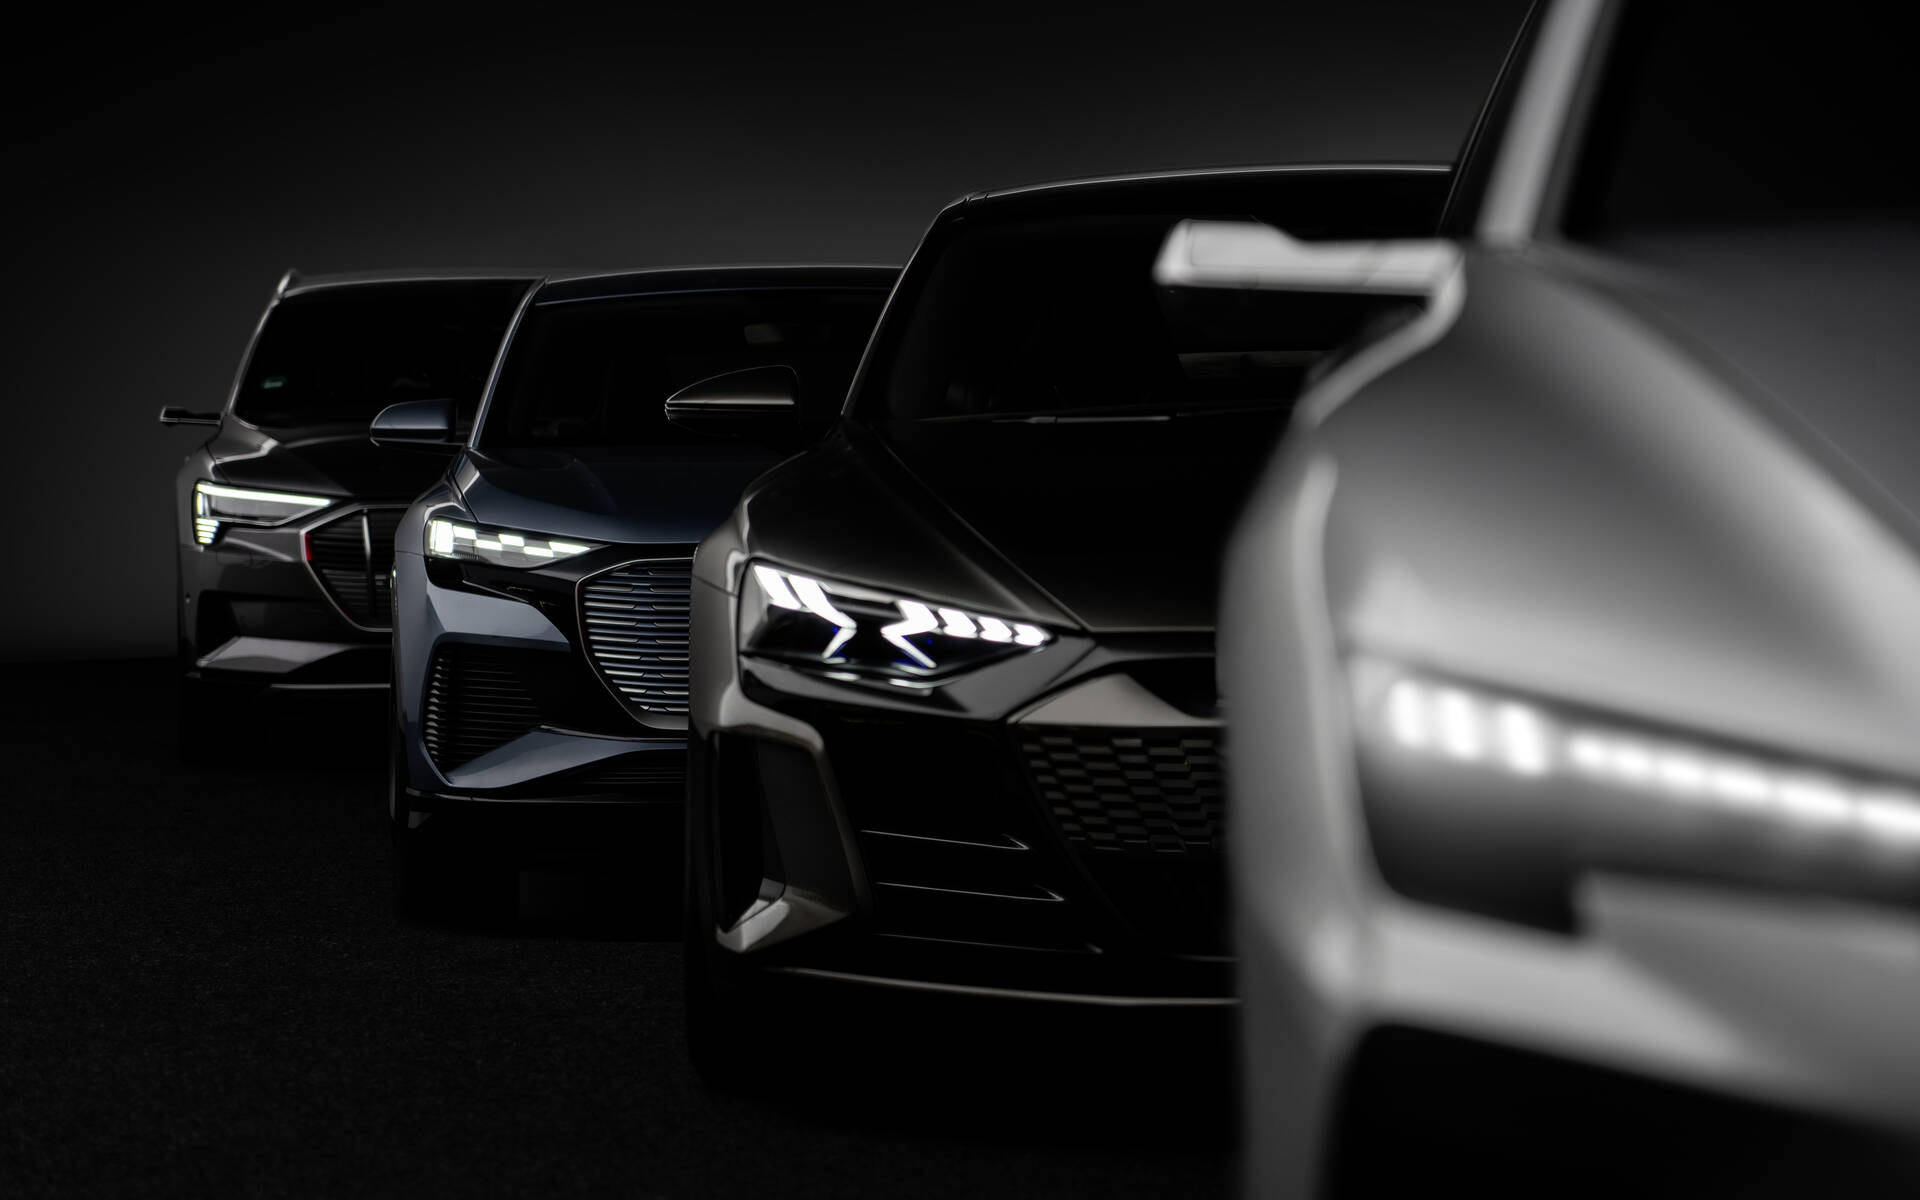 <p>Audi véhicules électriques - quatre plateformes distinctes.</p>